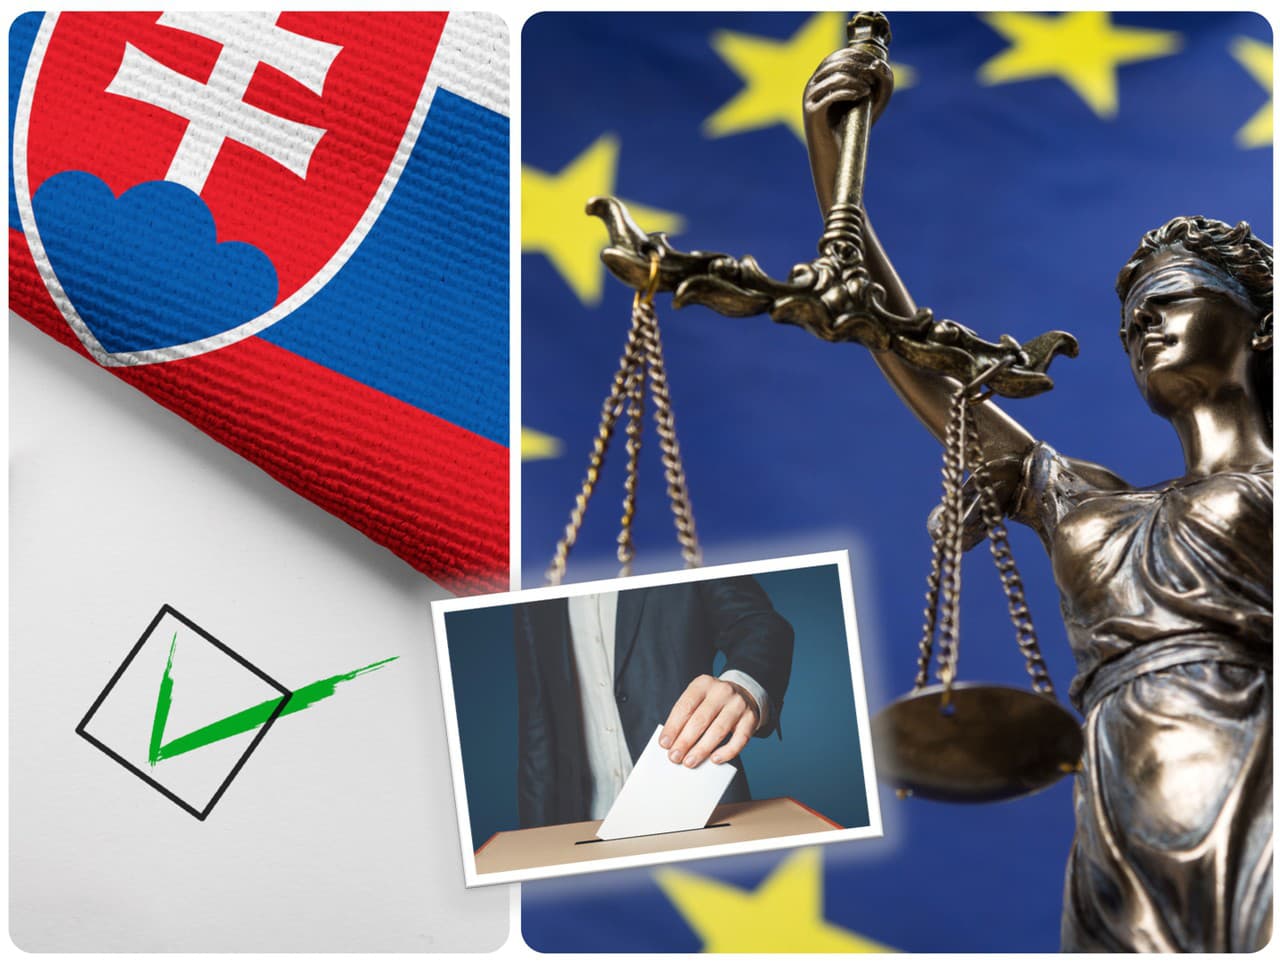 Prieskum agentúry AKO hovorí jasne: Takto podľa Slovákov dopadneme po septembrových voľbách.